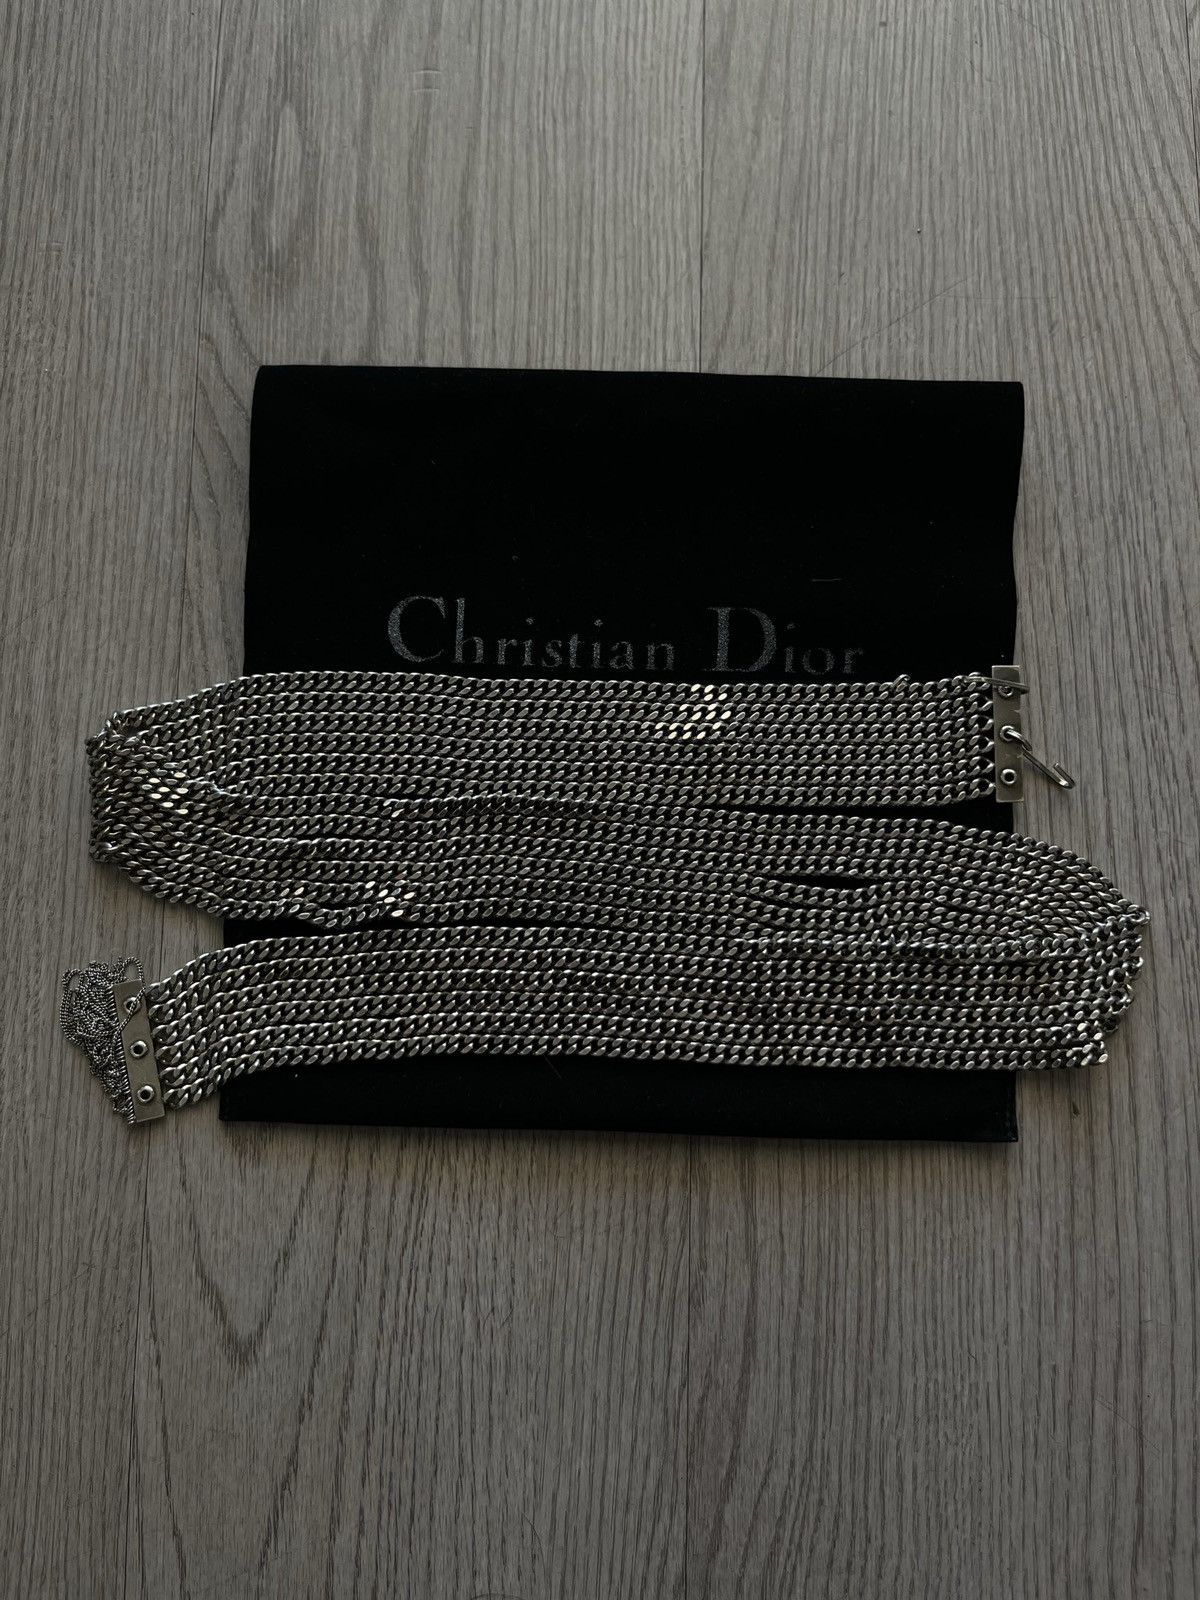 Dior Dior Homme S/S 04 “Strip” Belt | Grailed